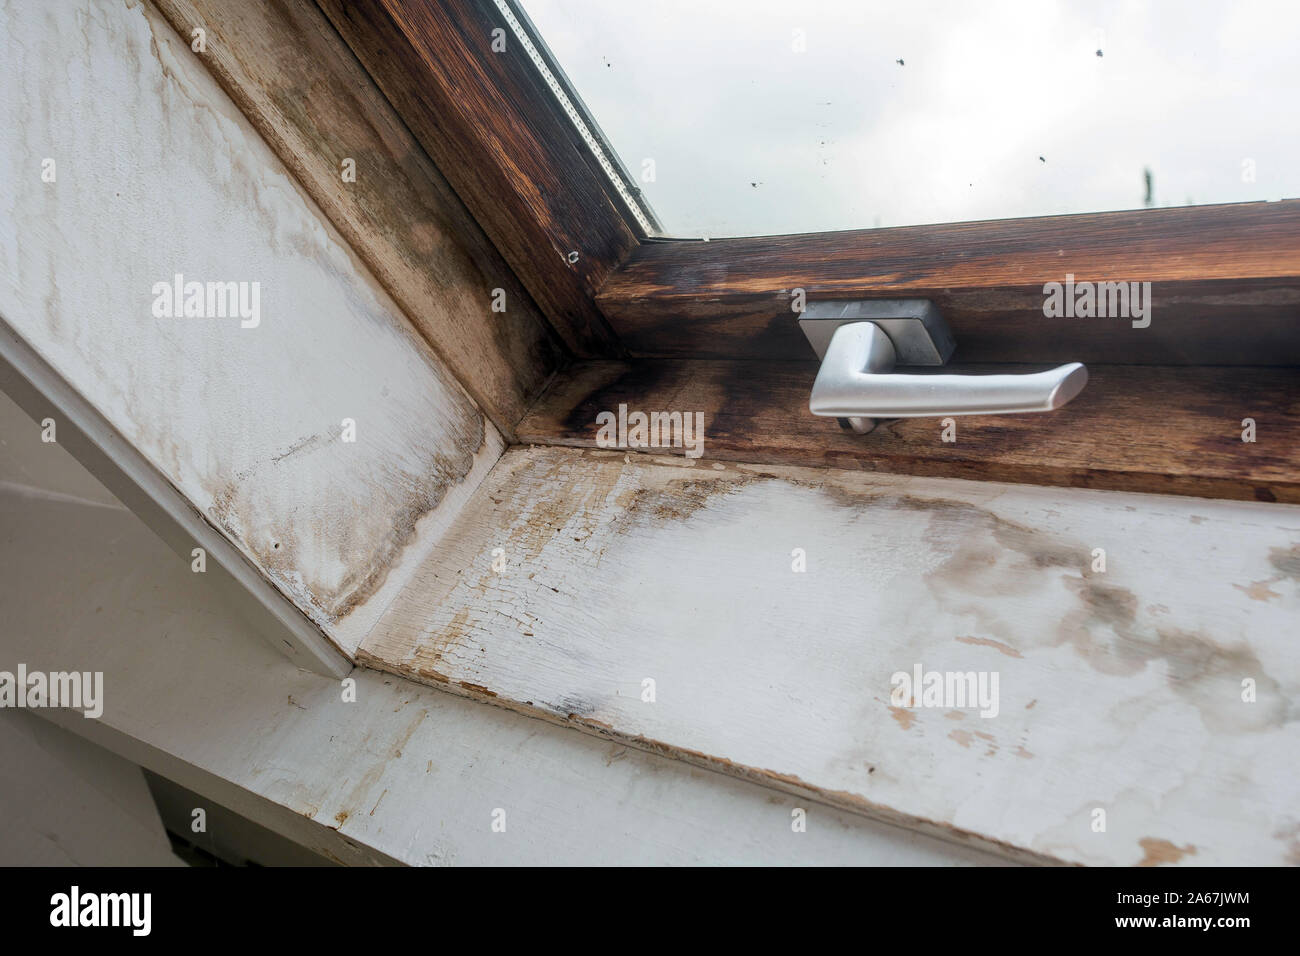 Marco de ventana de madera antigua con molde sucios y rotos en el interior de una casa antigua, necesidades de renovación Foto de stock